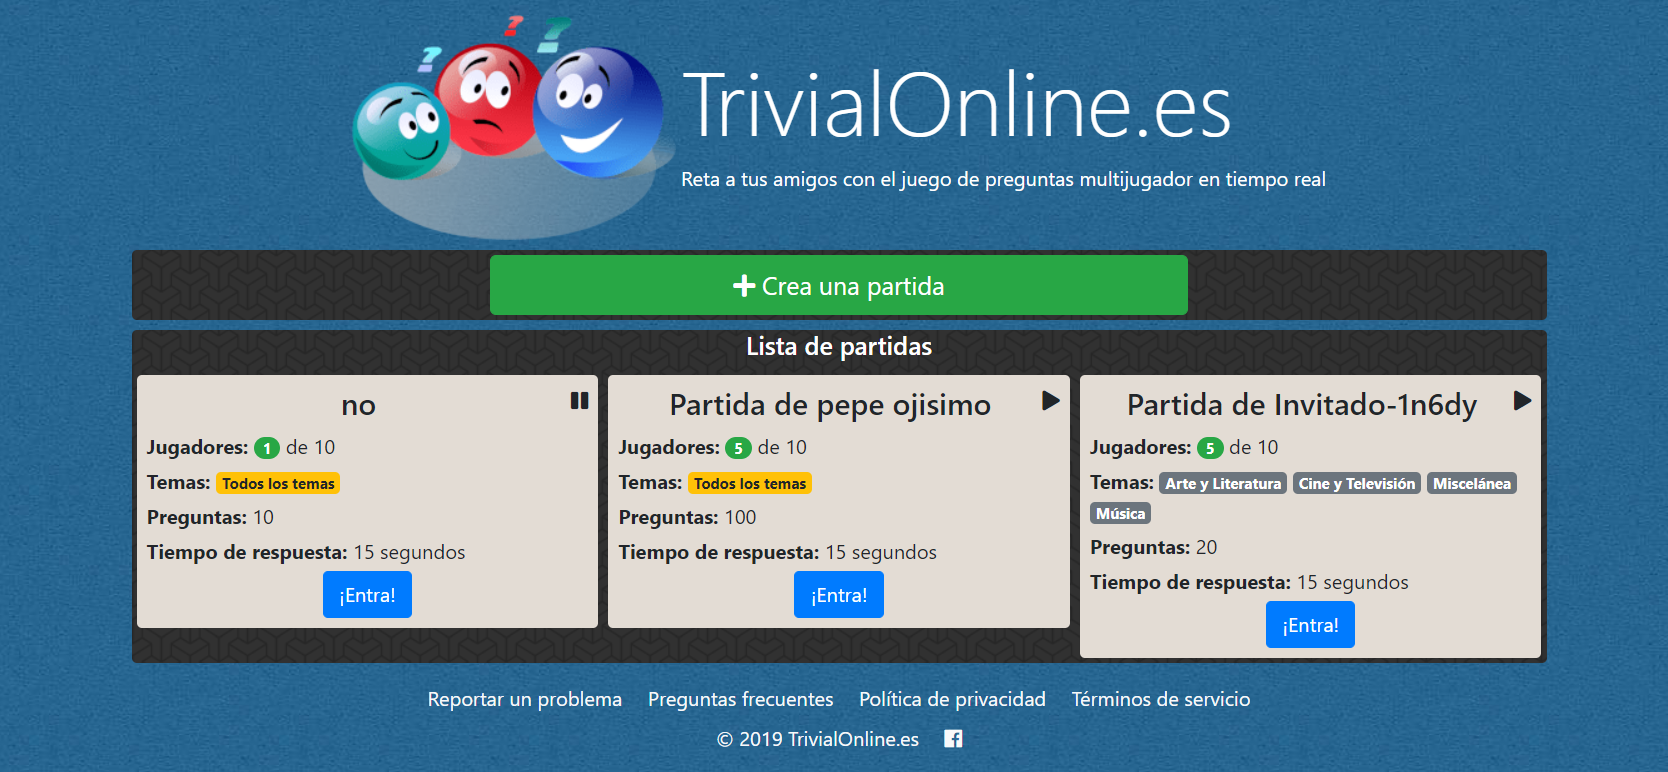 Trivialonine-Mejores-trivial-gratis-online.png